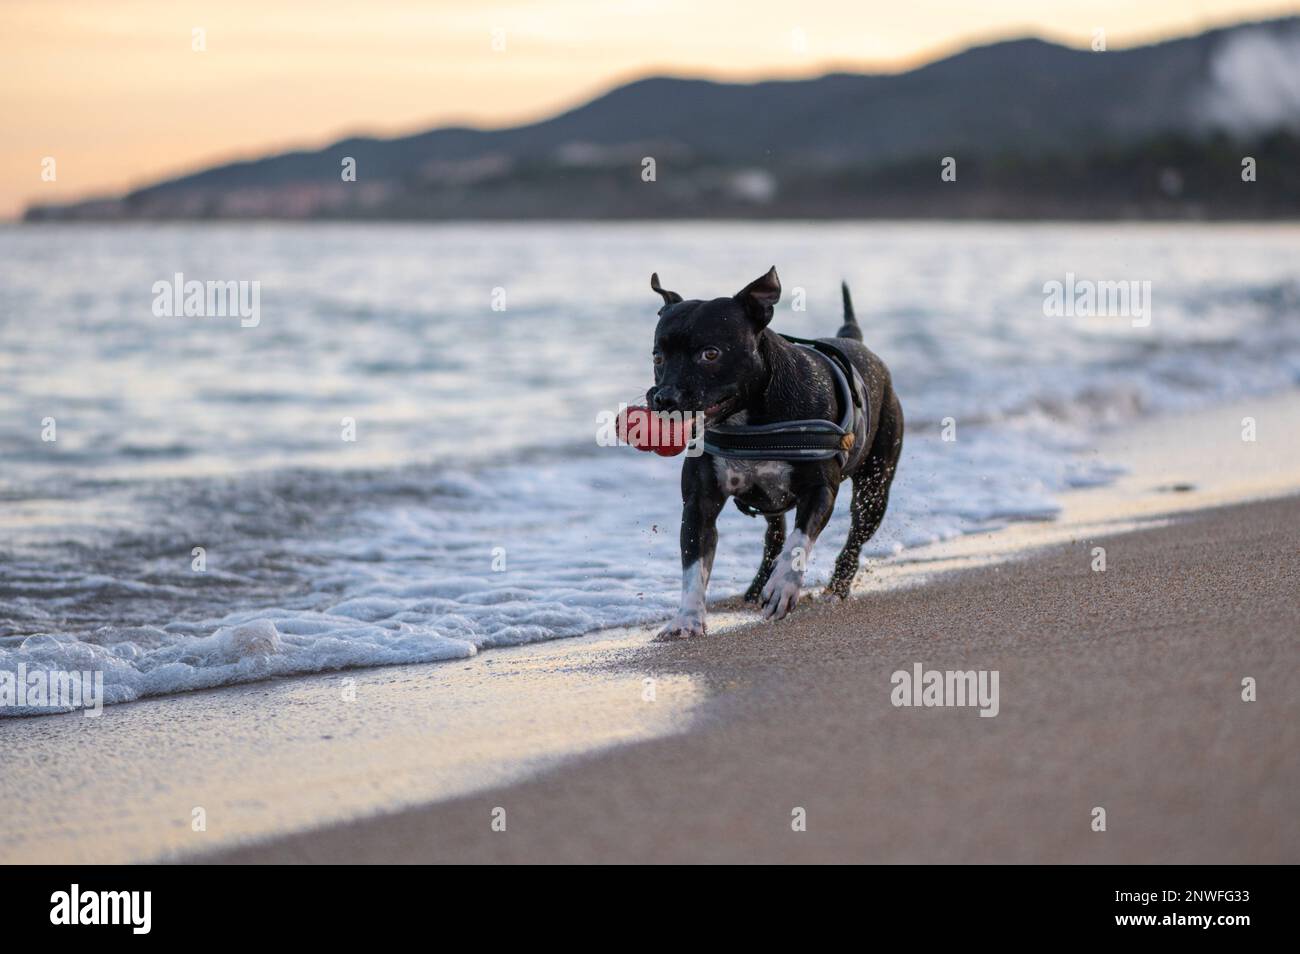 Chien de race Staffordshire Bullterrier noir qui joue sur la Plage et court dans la mer Stockfoto